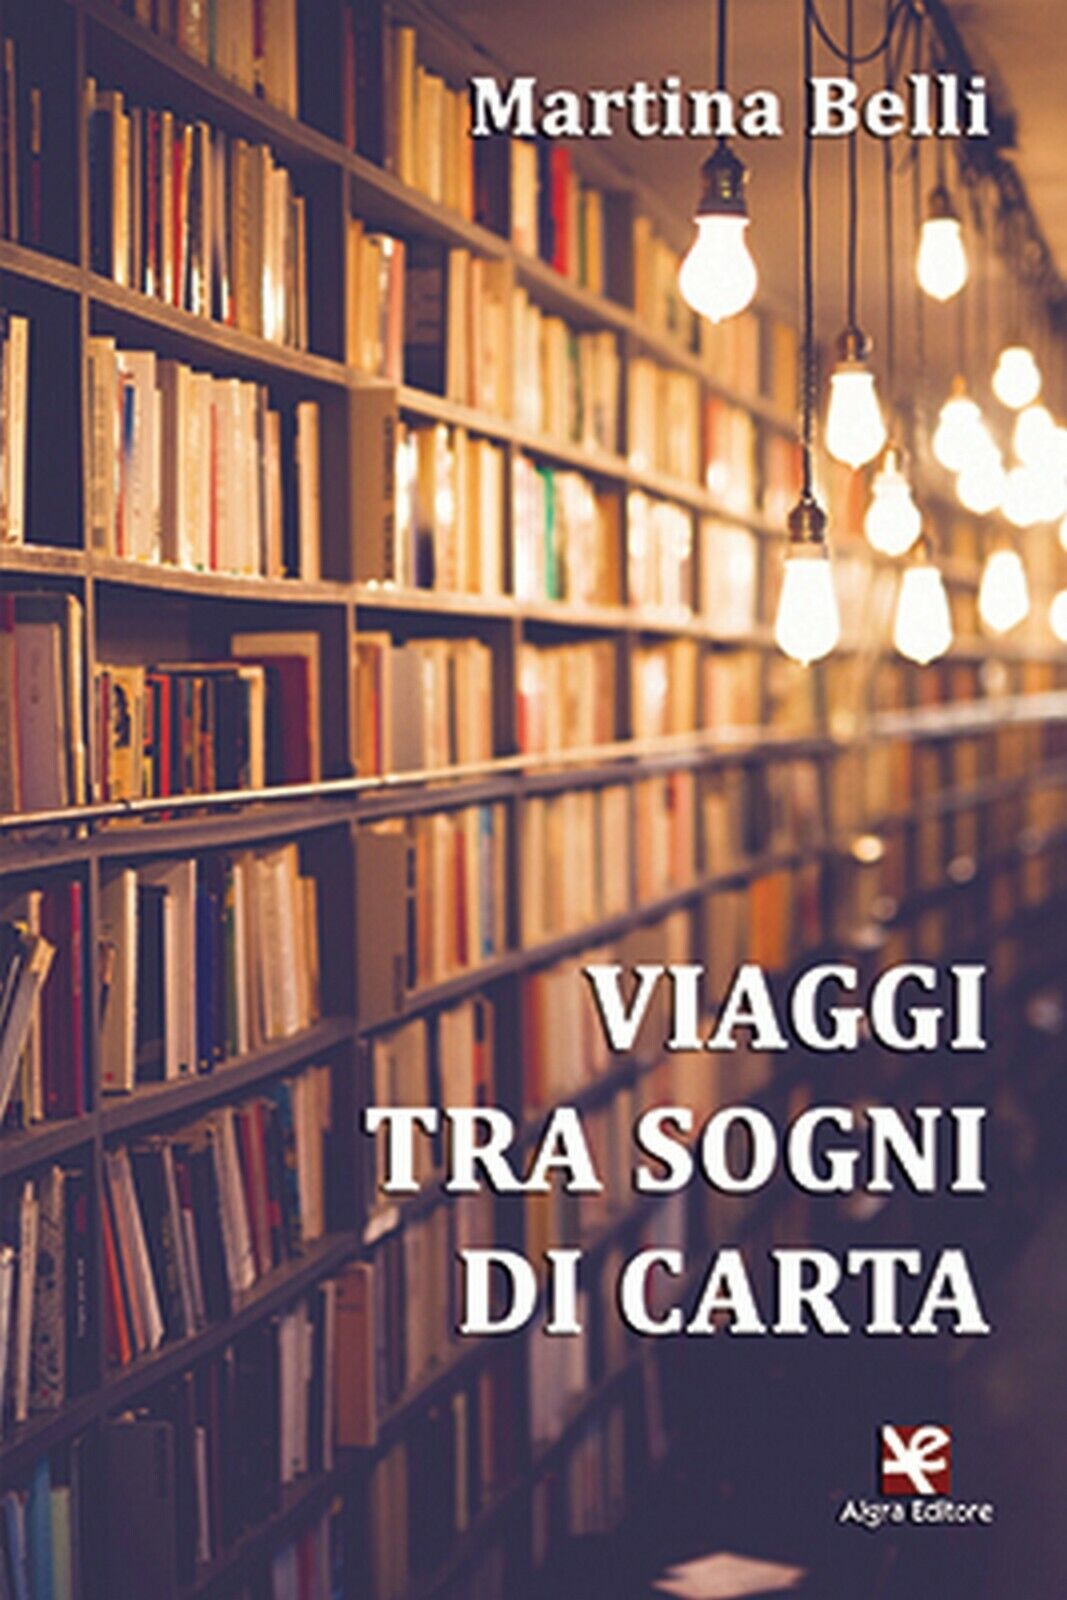 Viaggi tra sogni di carta  di Martina Belli,  Algra Editore